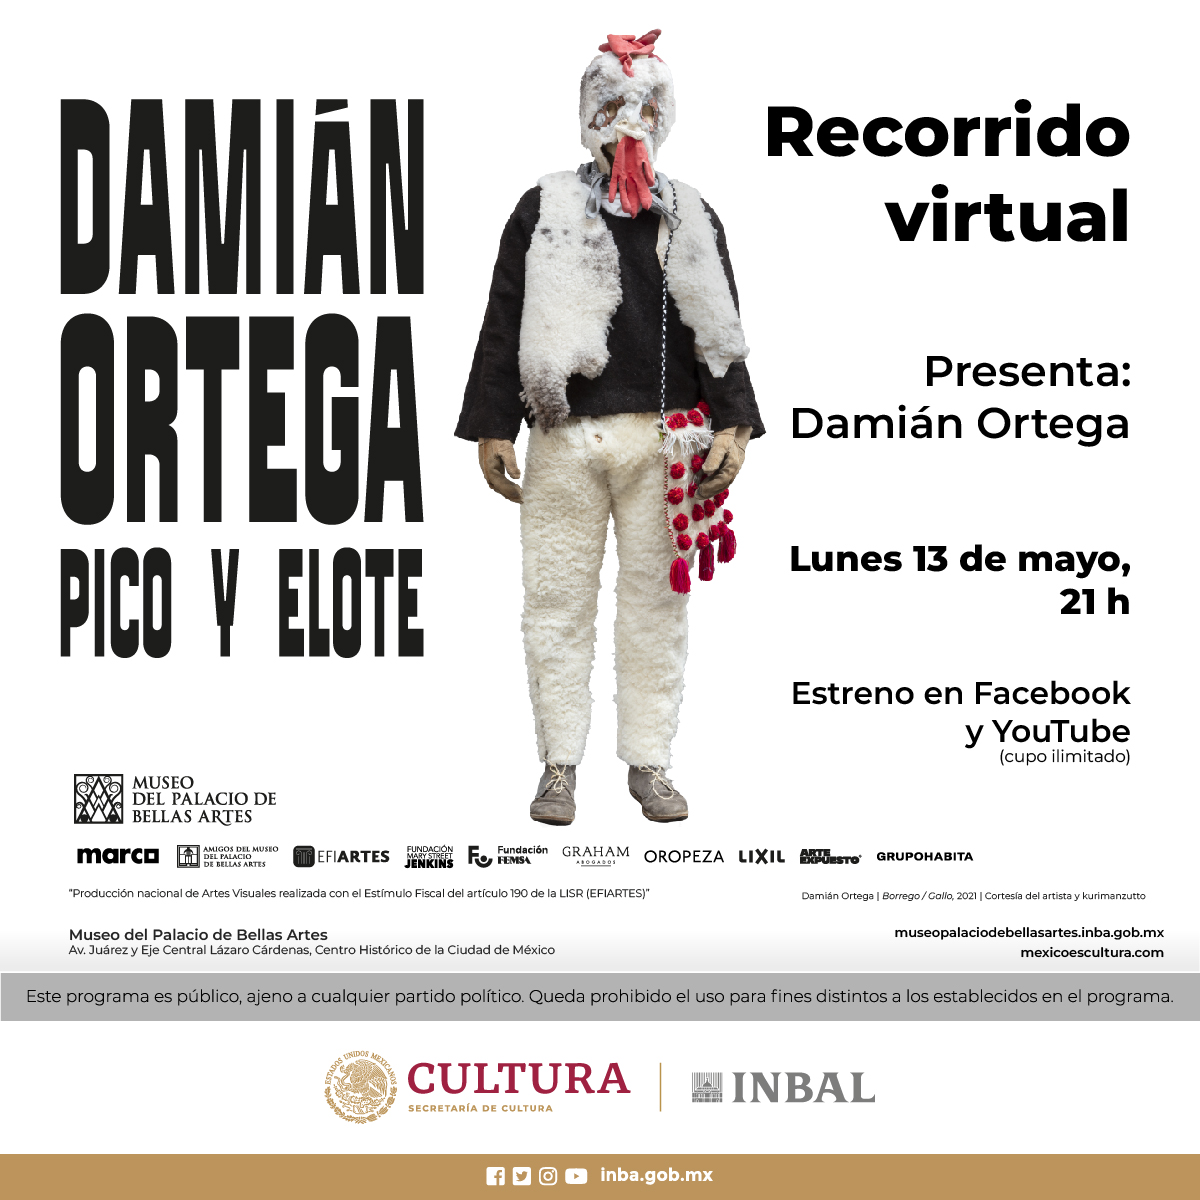 El lunes 13 de mayo a las 21 h, a través de #FacebookLive, podrás disfrutar de un recorrido virtual por la exposición 'Damián Ortega. Pico y elote' del @mbellasartes. Presente: Damián Ortega. ¡No te lo pierdas! 🤩